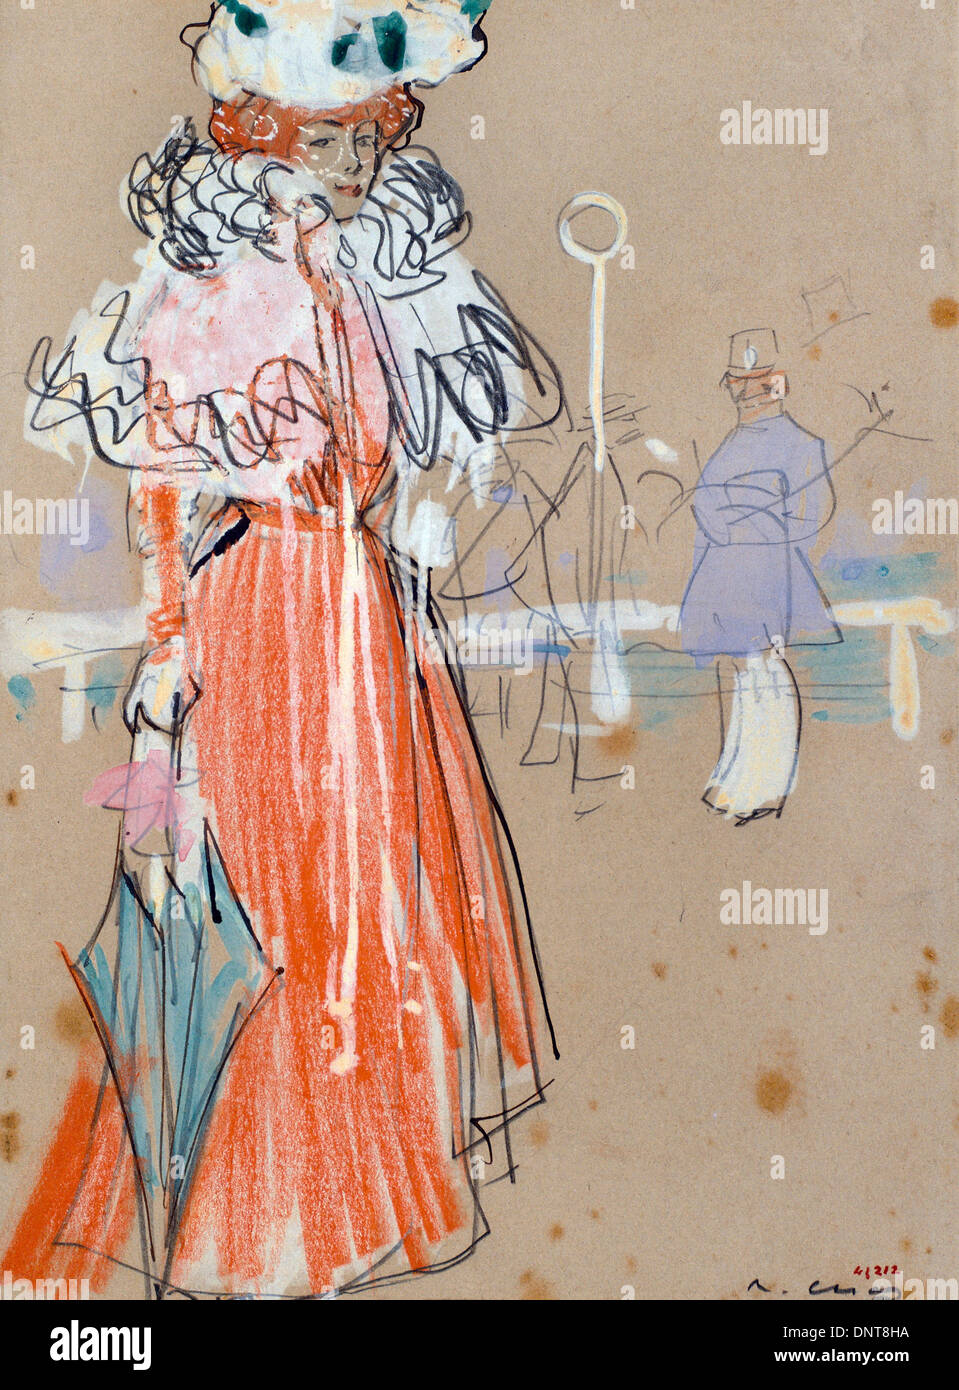 Ramon Casas i Carbo, Female Figure in Red. Circa 1900. Gouache, graphite pencil on paper. Stock Photo